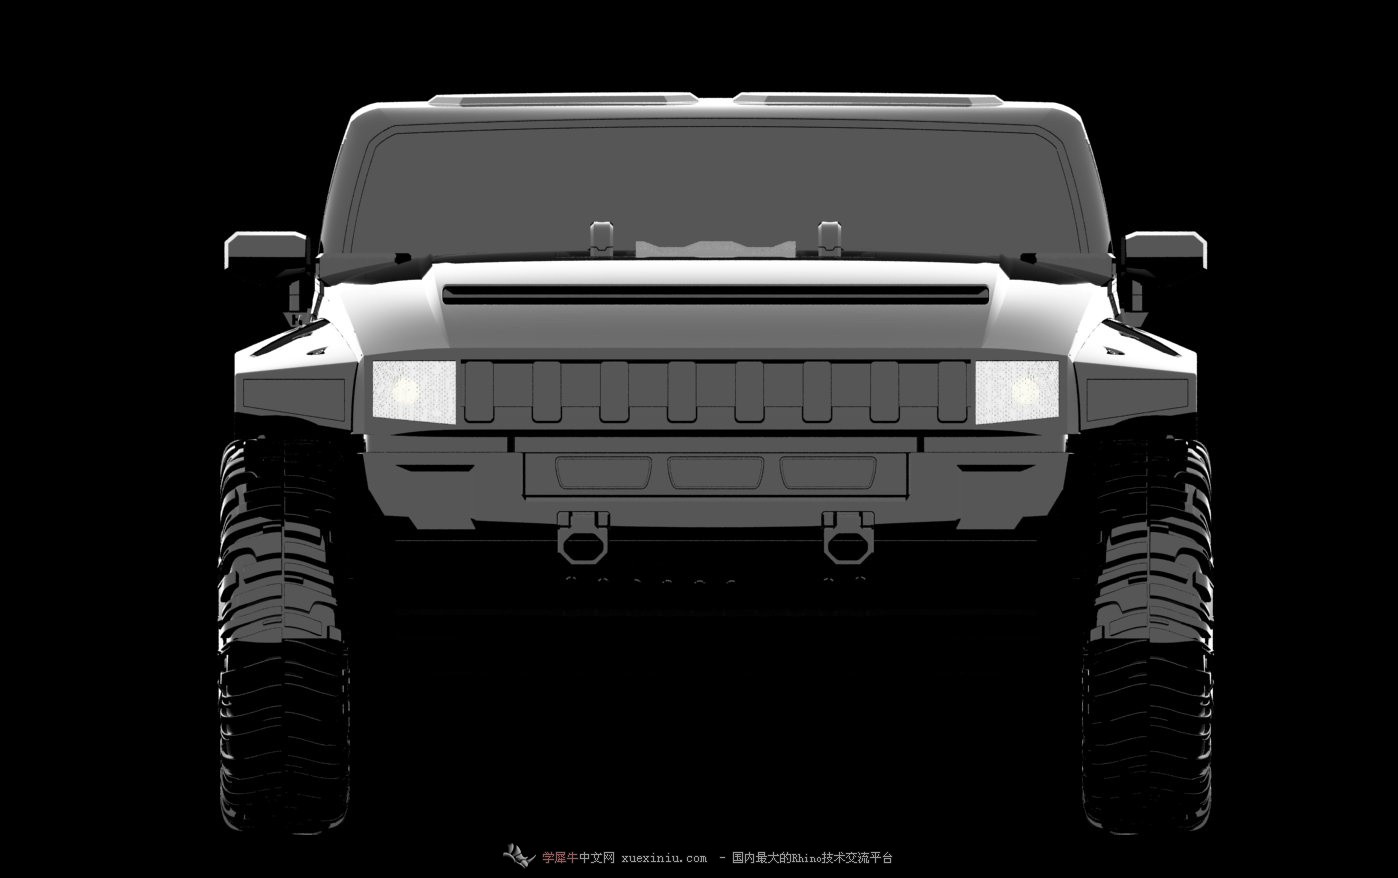 Hummer_HX_Concept-8.jpg